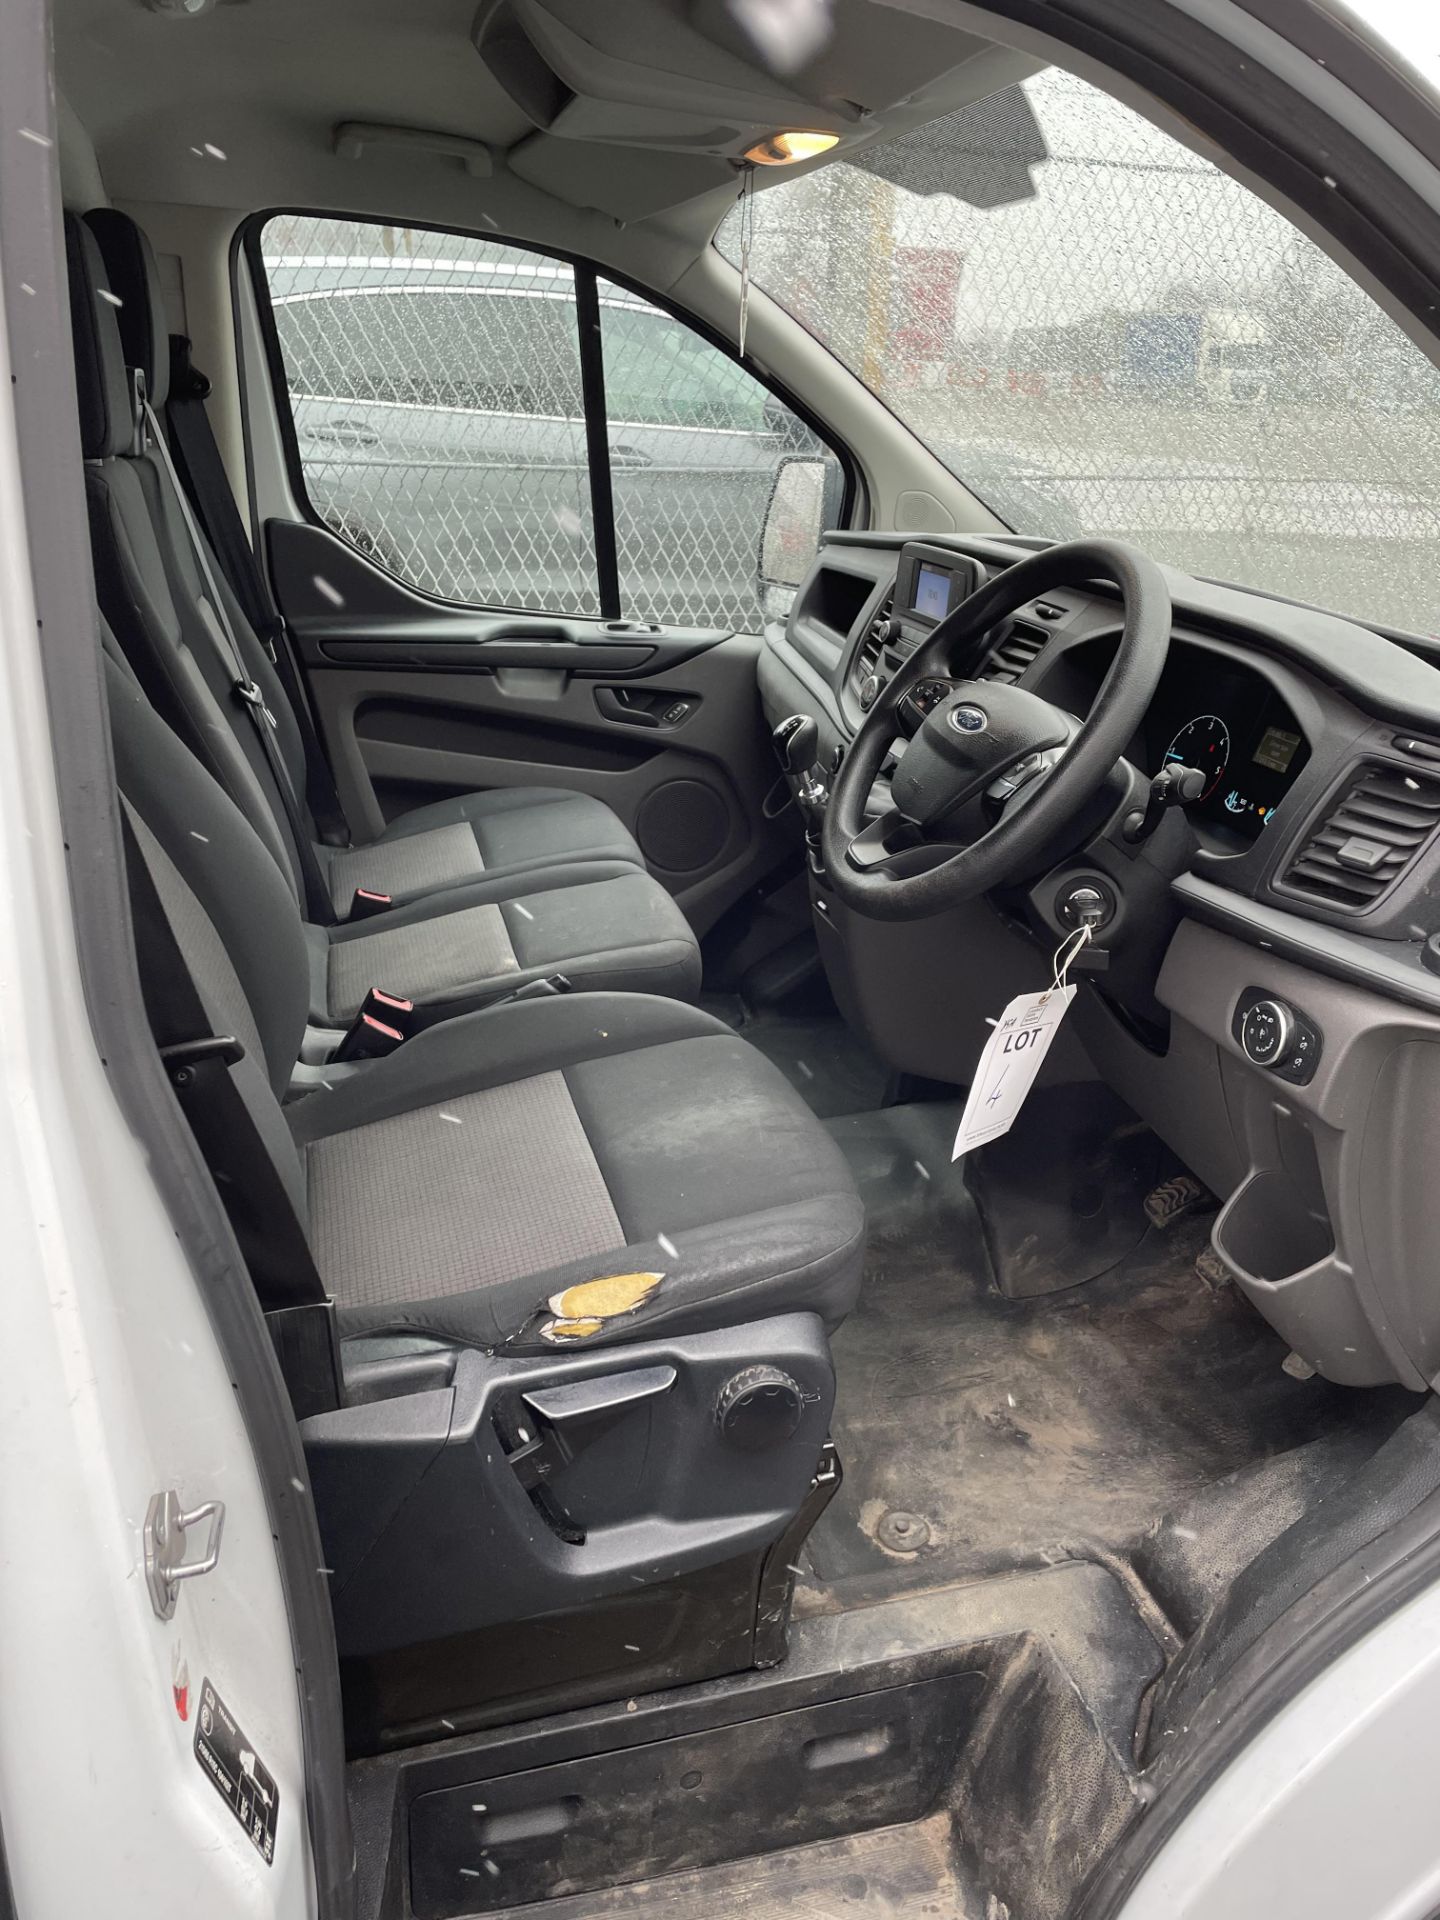 2020 Ford Transit panel van - Image 3 of 7